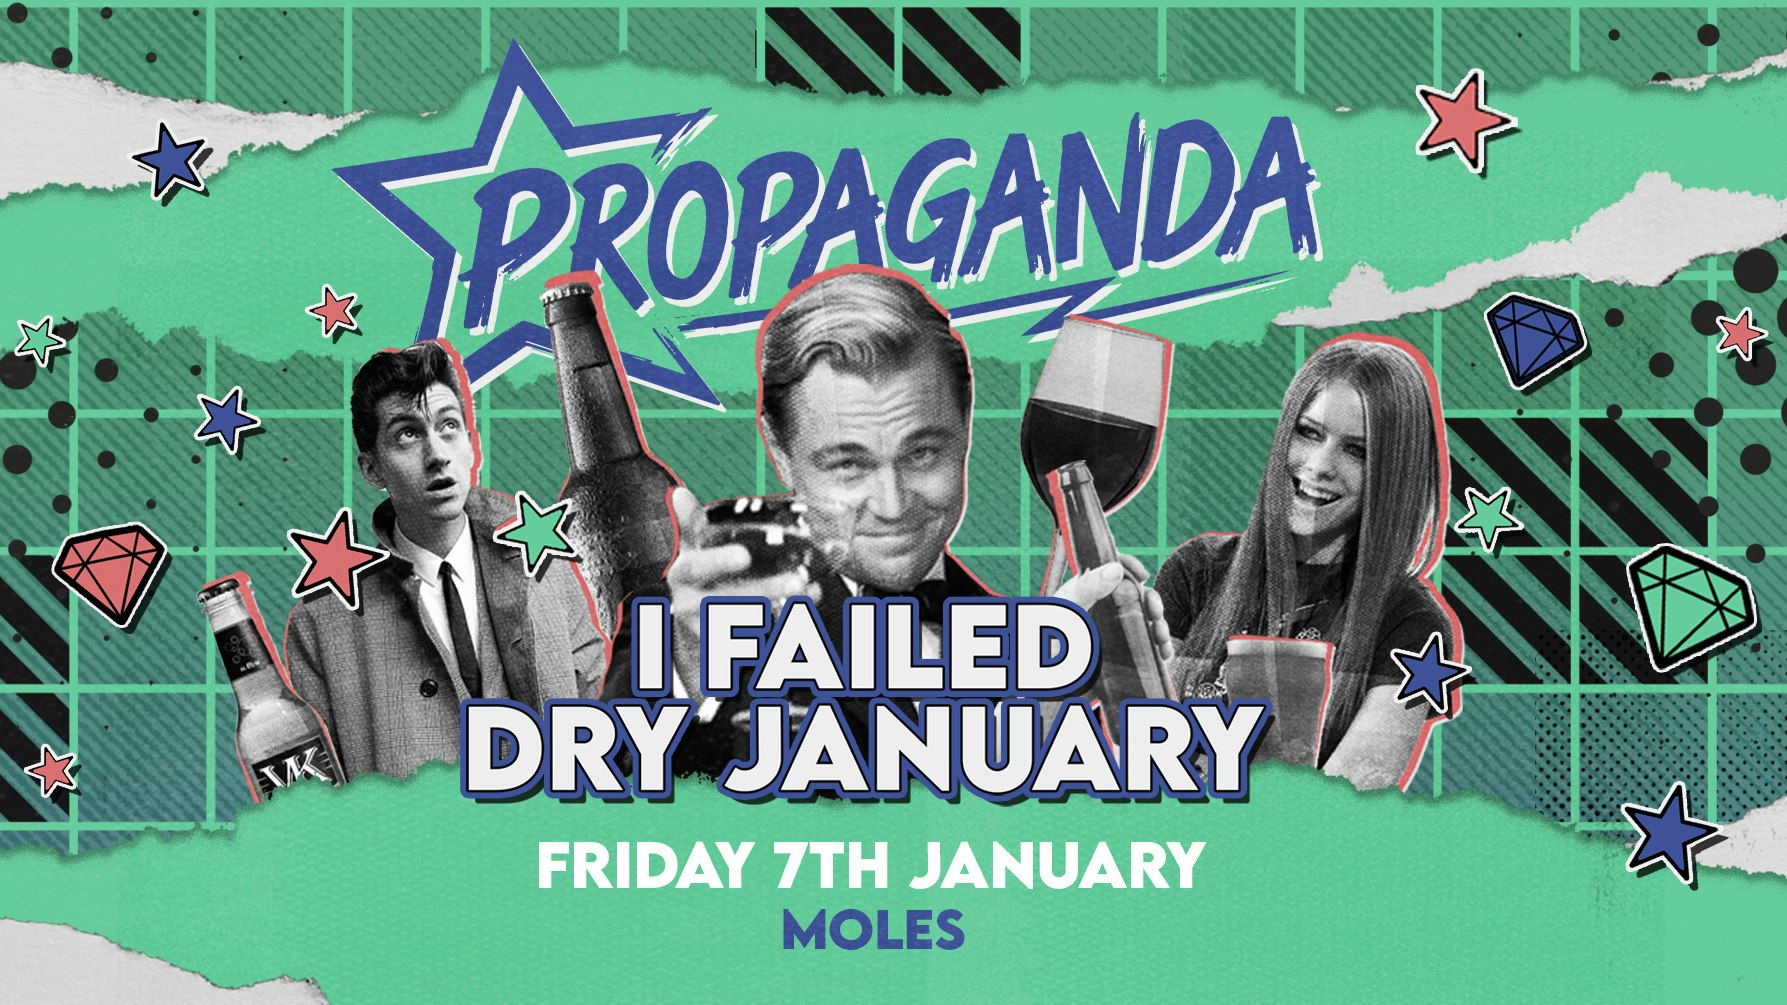 Propaganda Bath – I Failed Dry January!